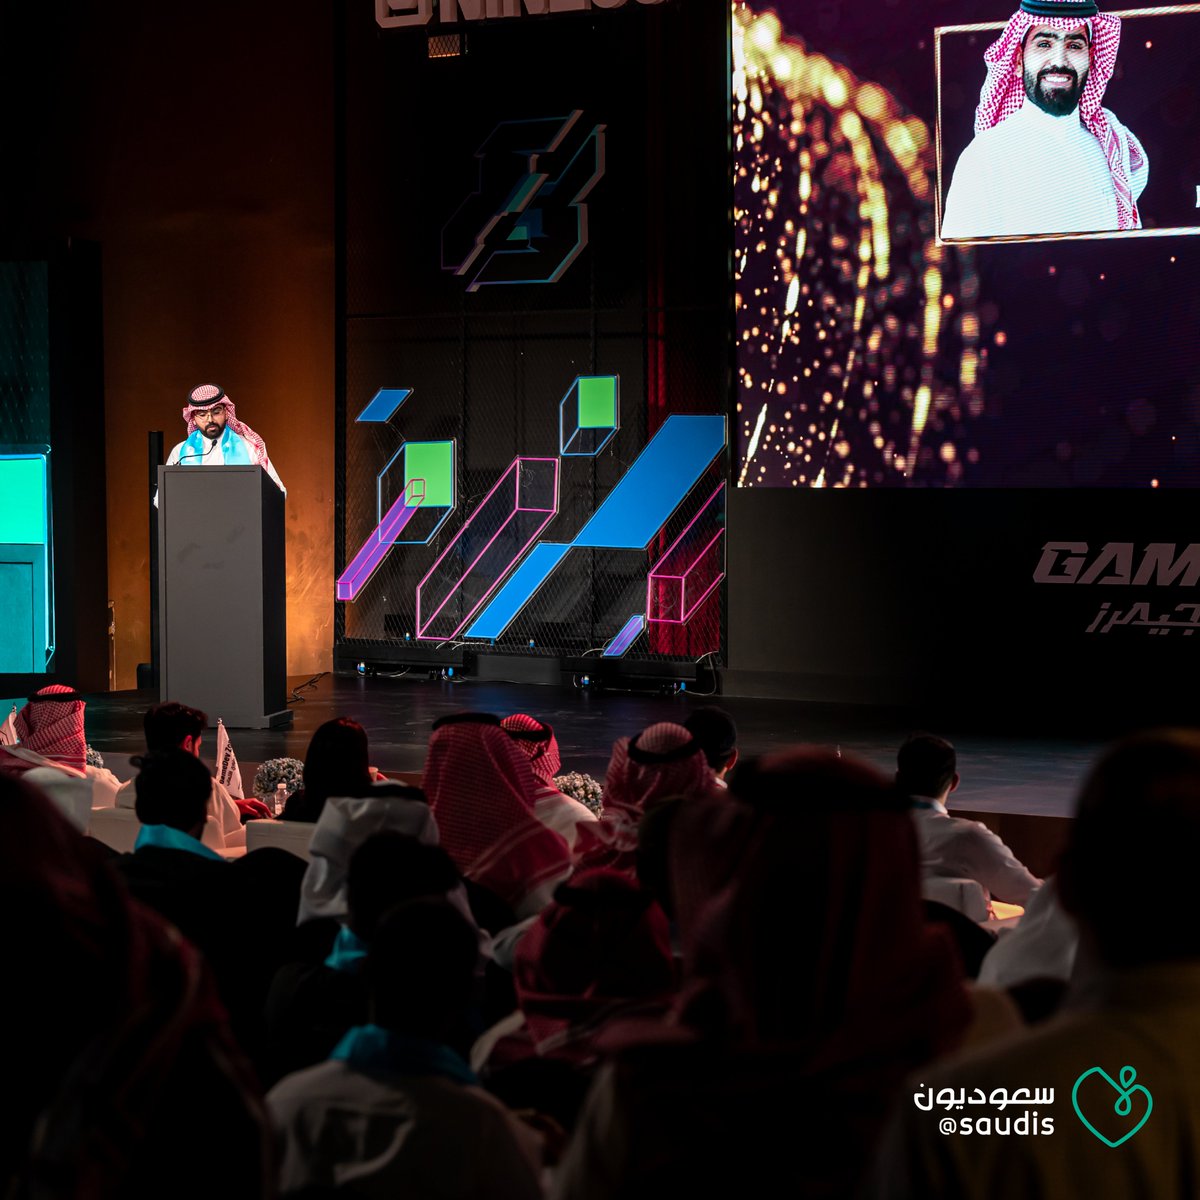 خطوة جديدة نحو تحقيق الطموحات السعودية في مجال الألعاب الالكترونية.. الأكاديمية السعودية للرياضات الإلكترونية تحتفي بتخريج أول دفعة من الخريجين في هذا المجال 🎮🇸🇦 #سعوديون